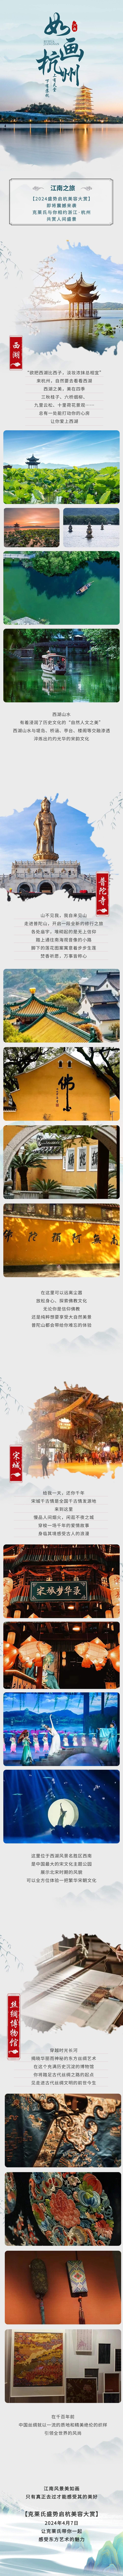 旅游出行江南线系列之旅手绘中国风文章长图.jpg